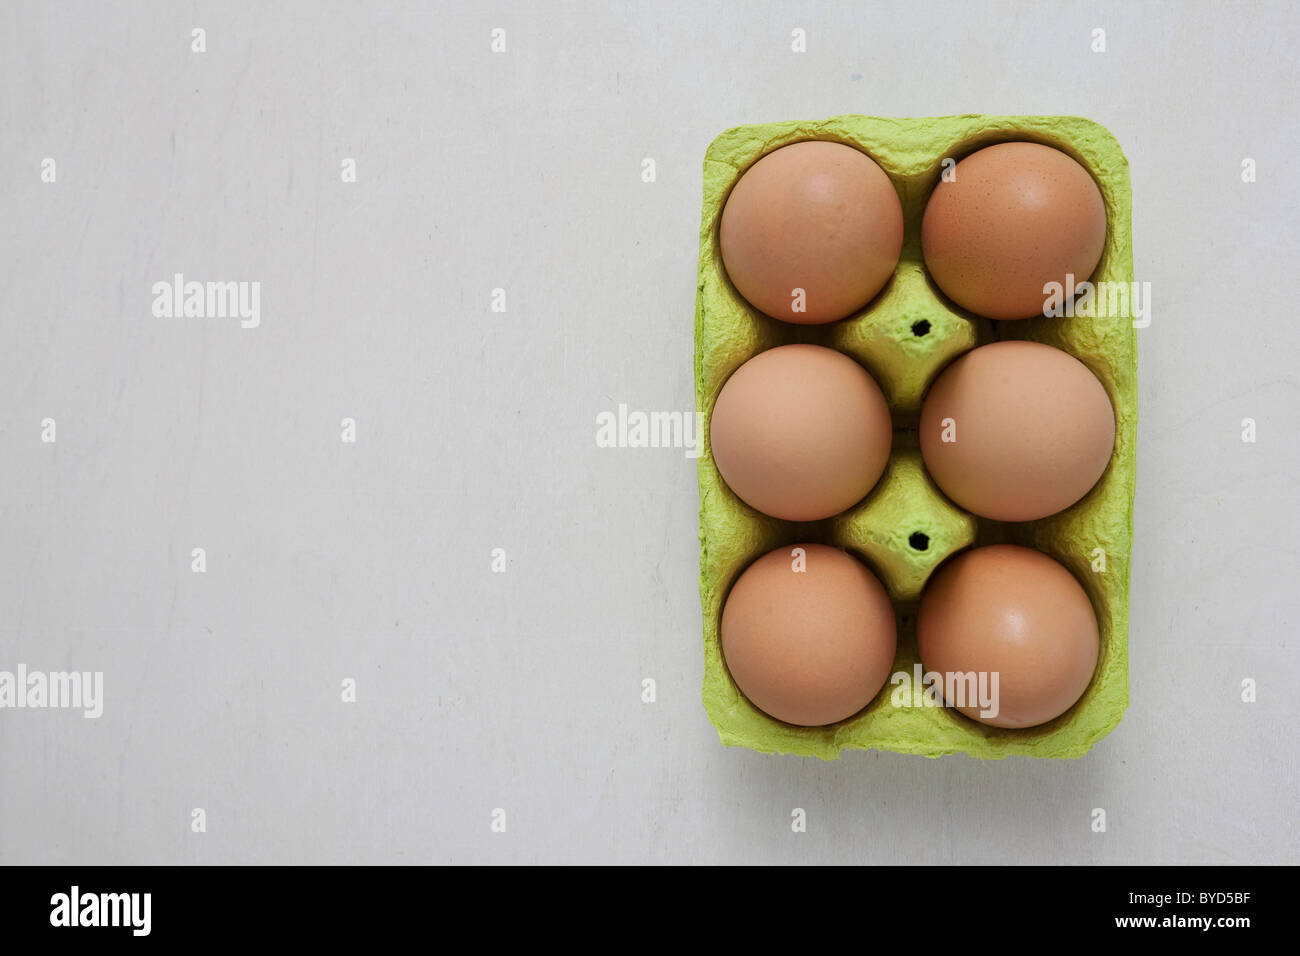 Six brown eggs in an egg carton Stock Photo